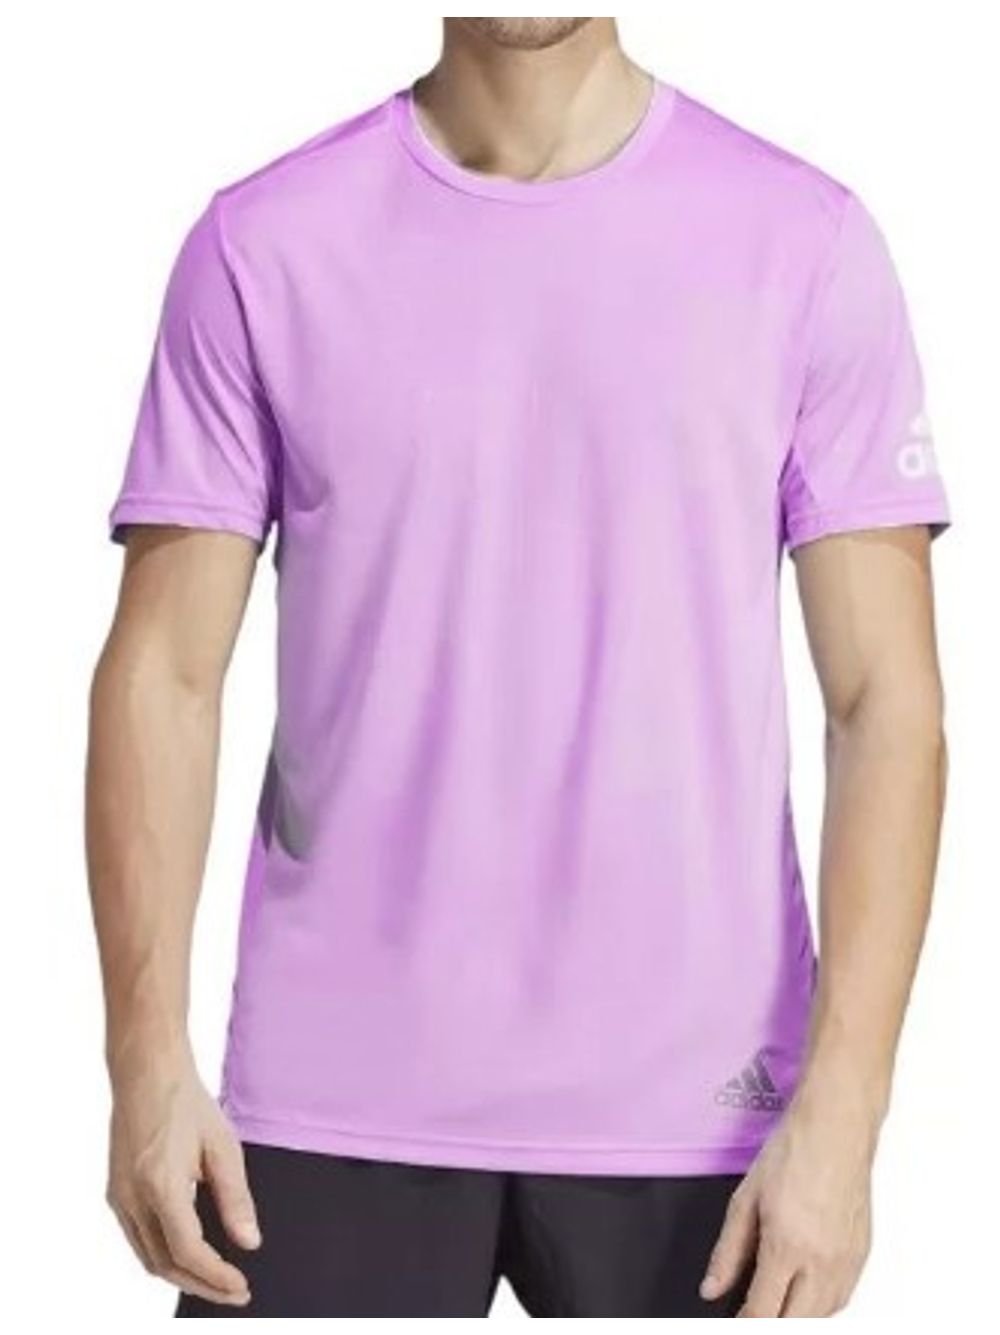 Camiseta Feminina Casual Adidas Essentials Slim Lilas - pittol